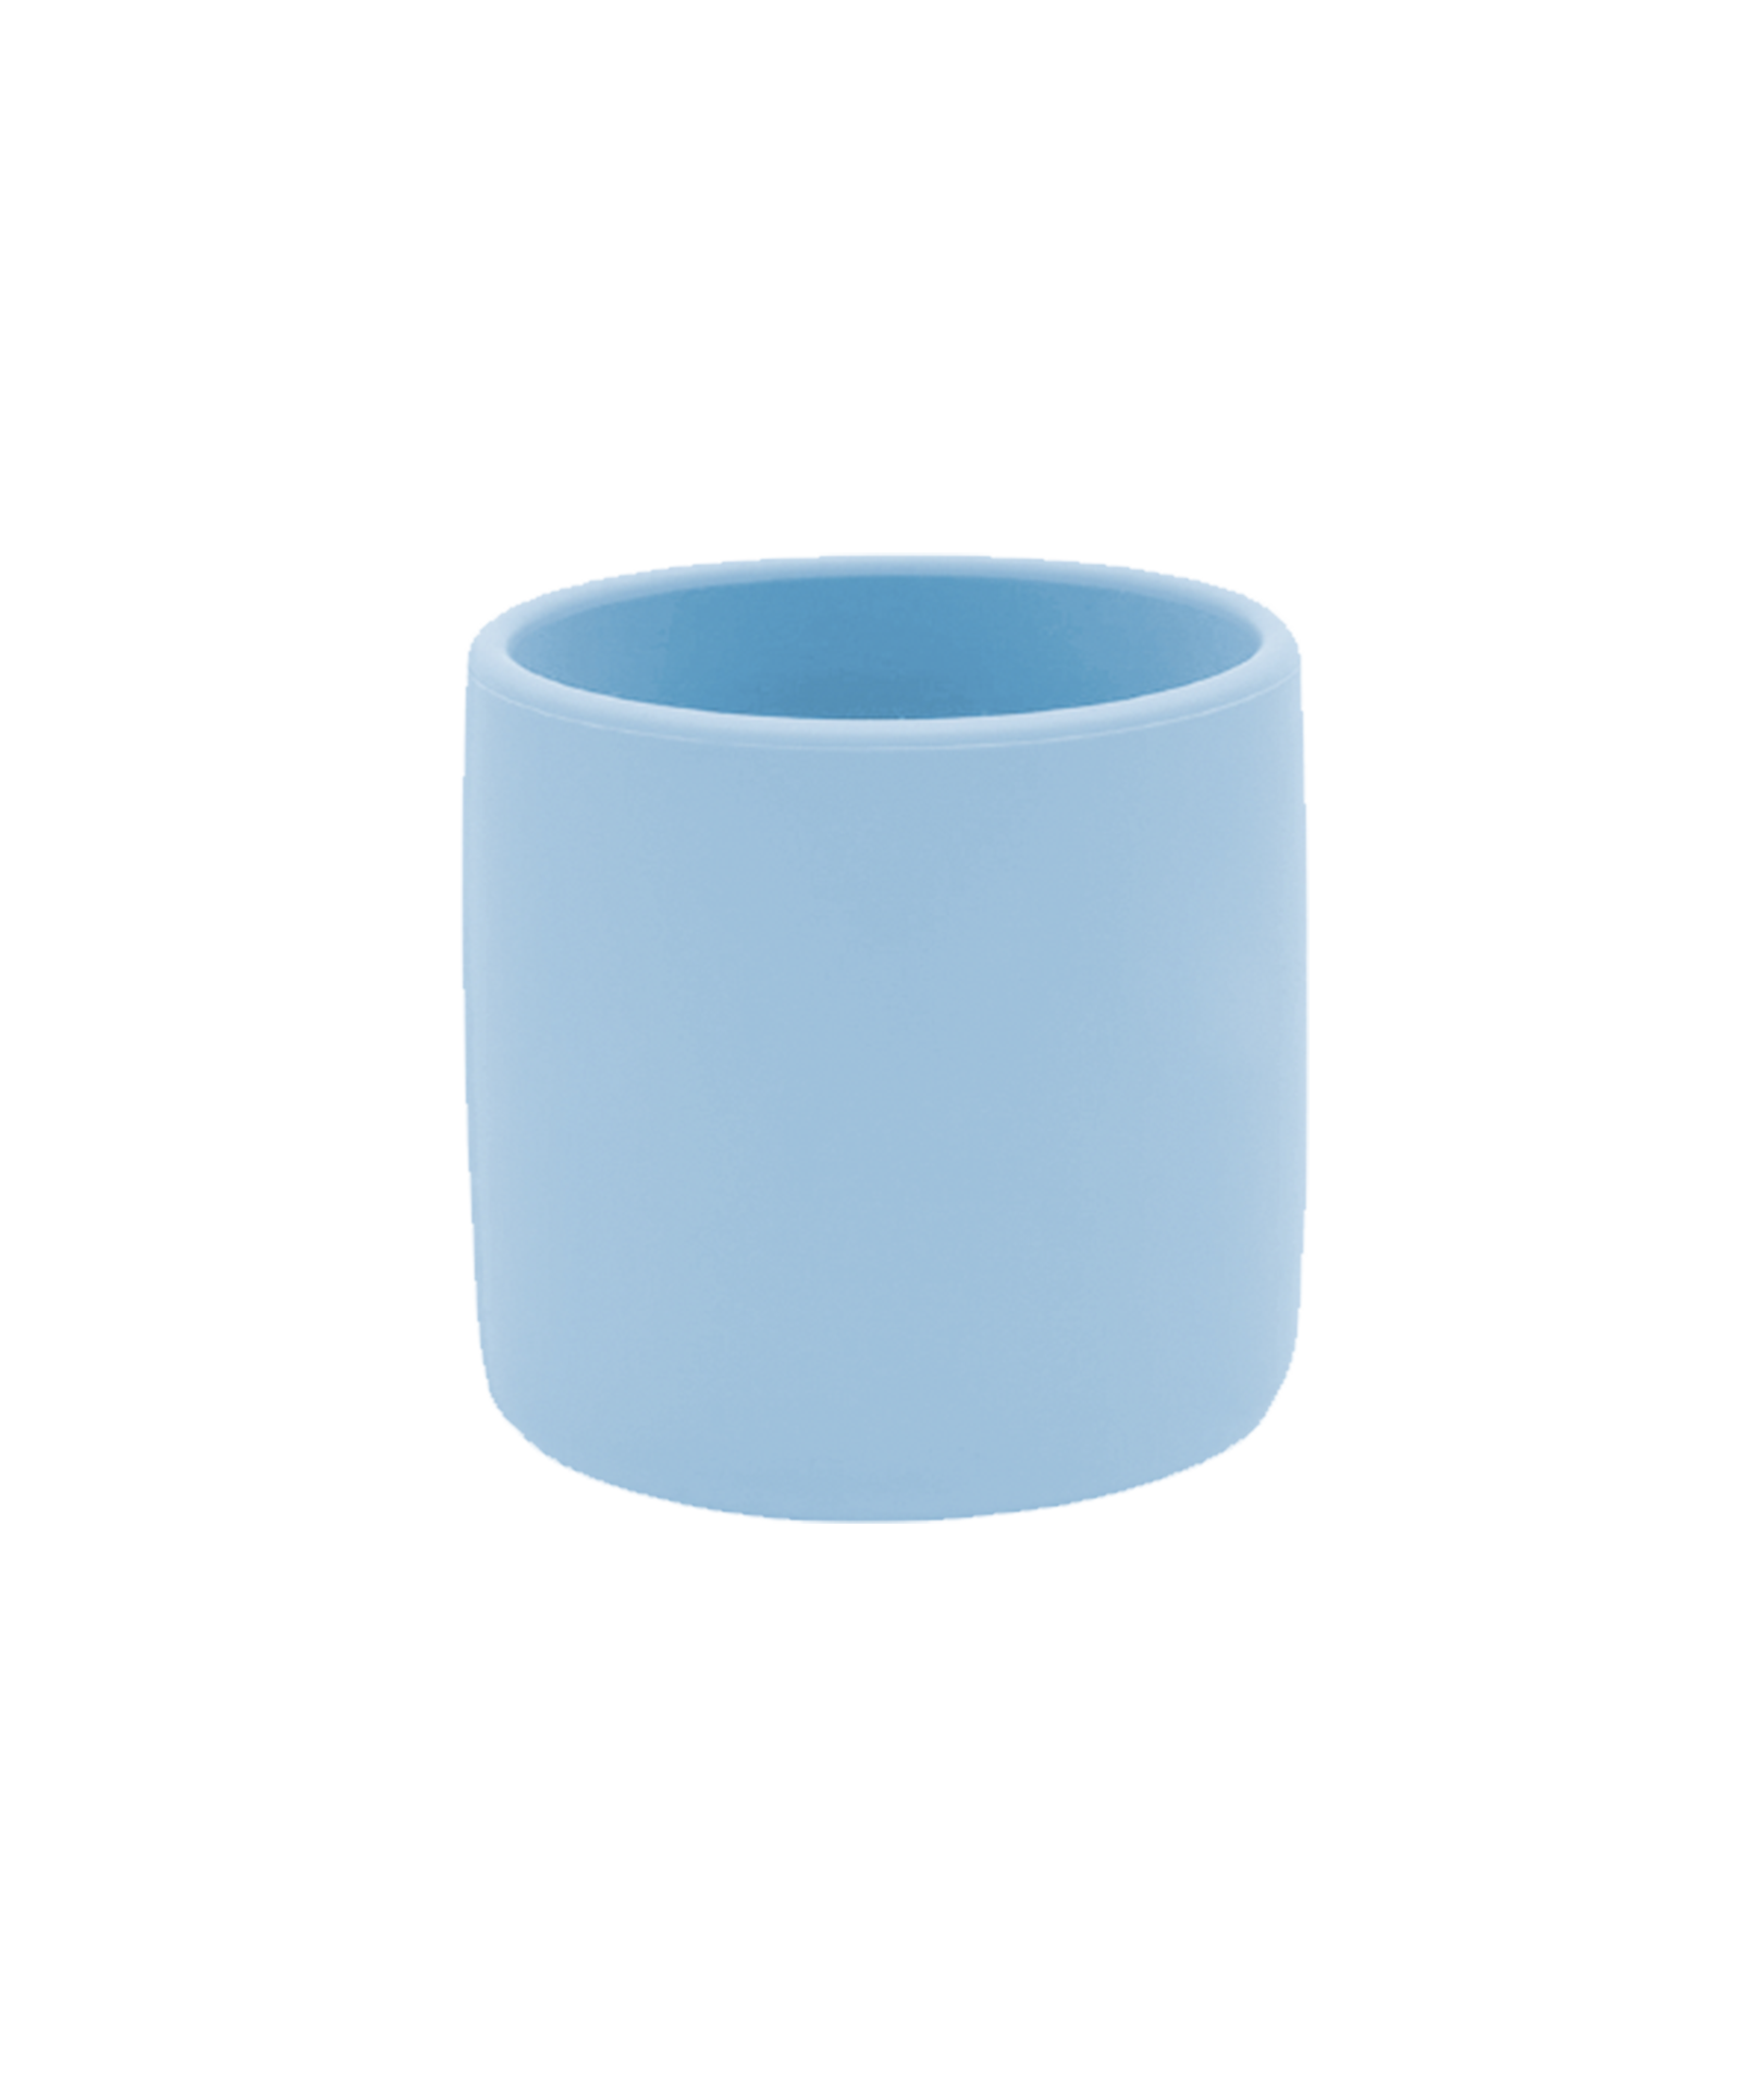 Стакан MiniCup Mineral Blue 101100003 шапочка для плавания 25degrees nuance blue силикон детский